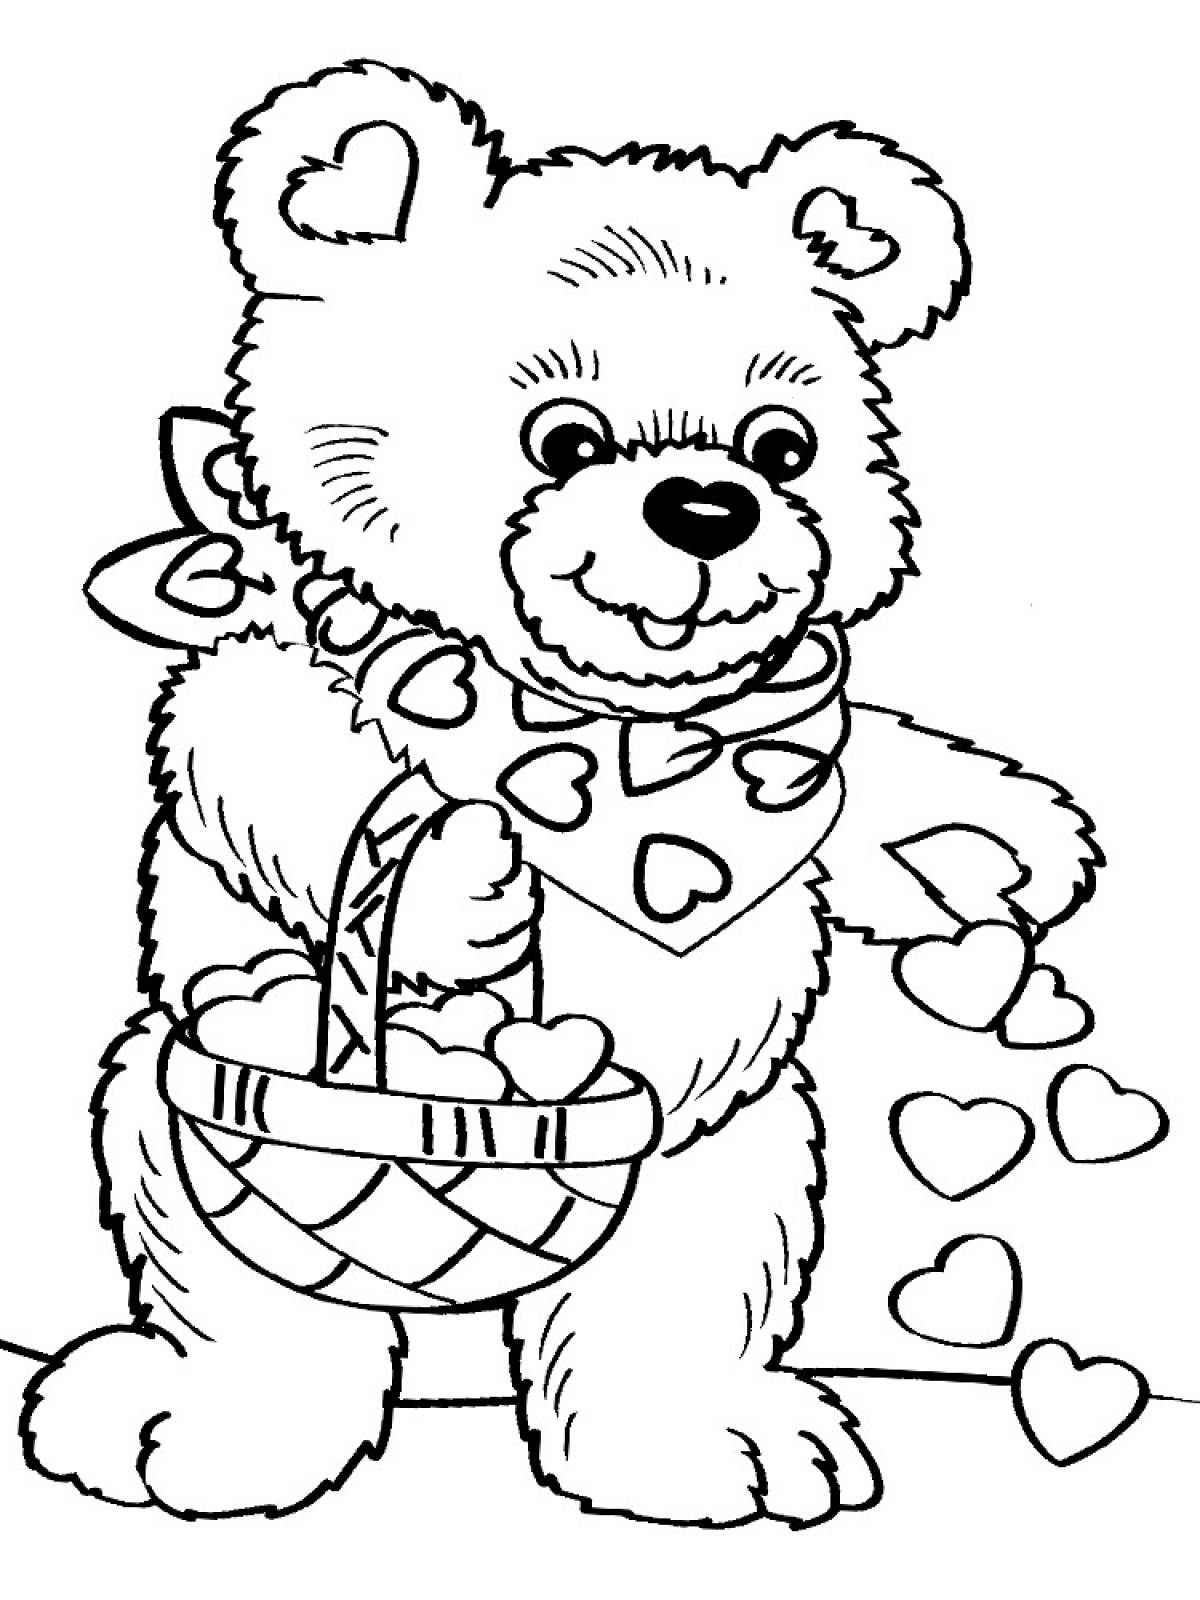 Раскраска для детей 7 10 лет. Раскраска. Медвежонок. Раскраска "мишки". Медвежонок раскраска для детей. Мишка Тедди раскраска.